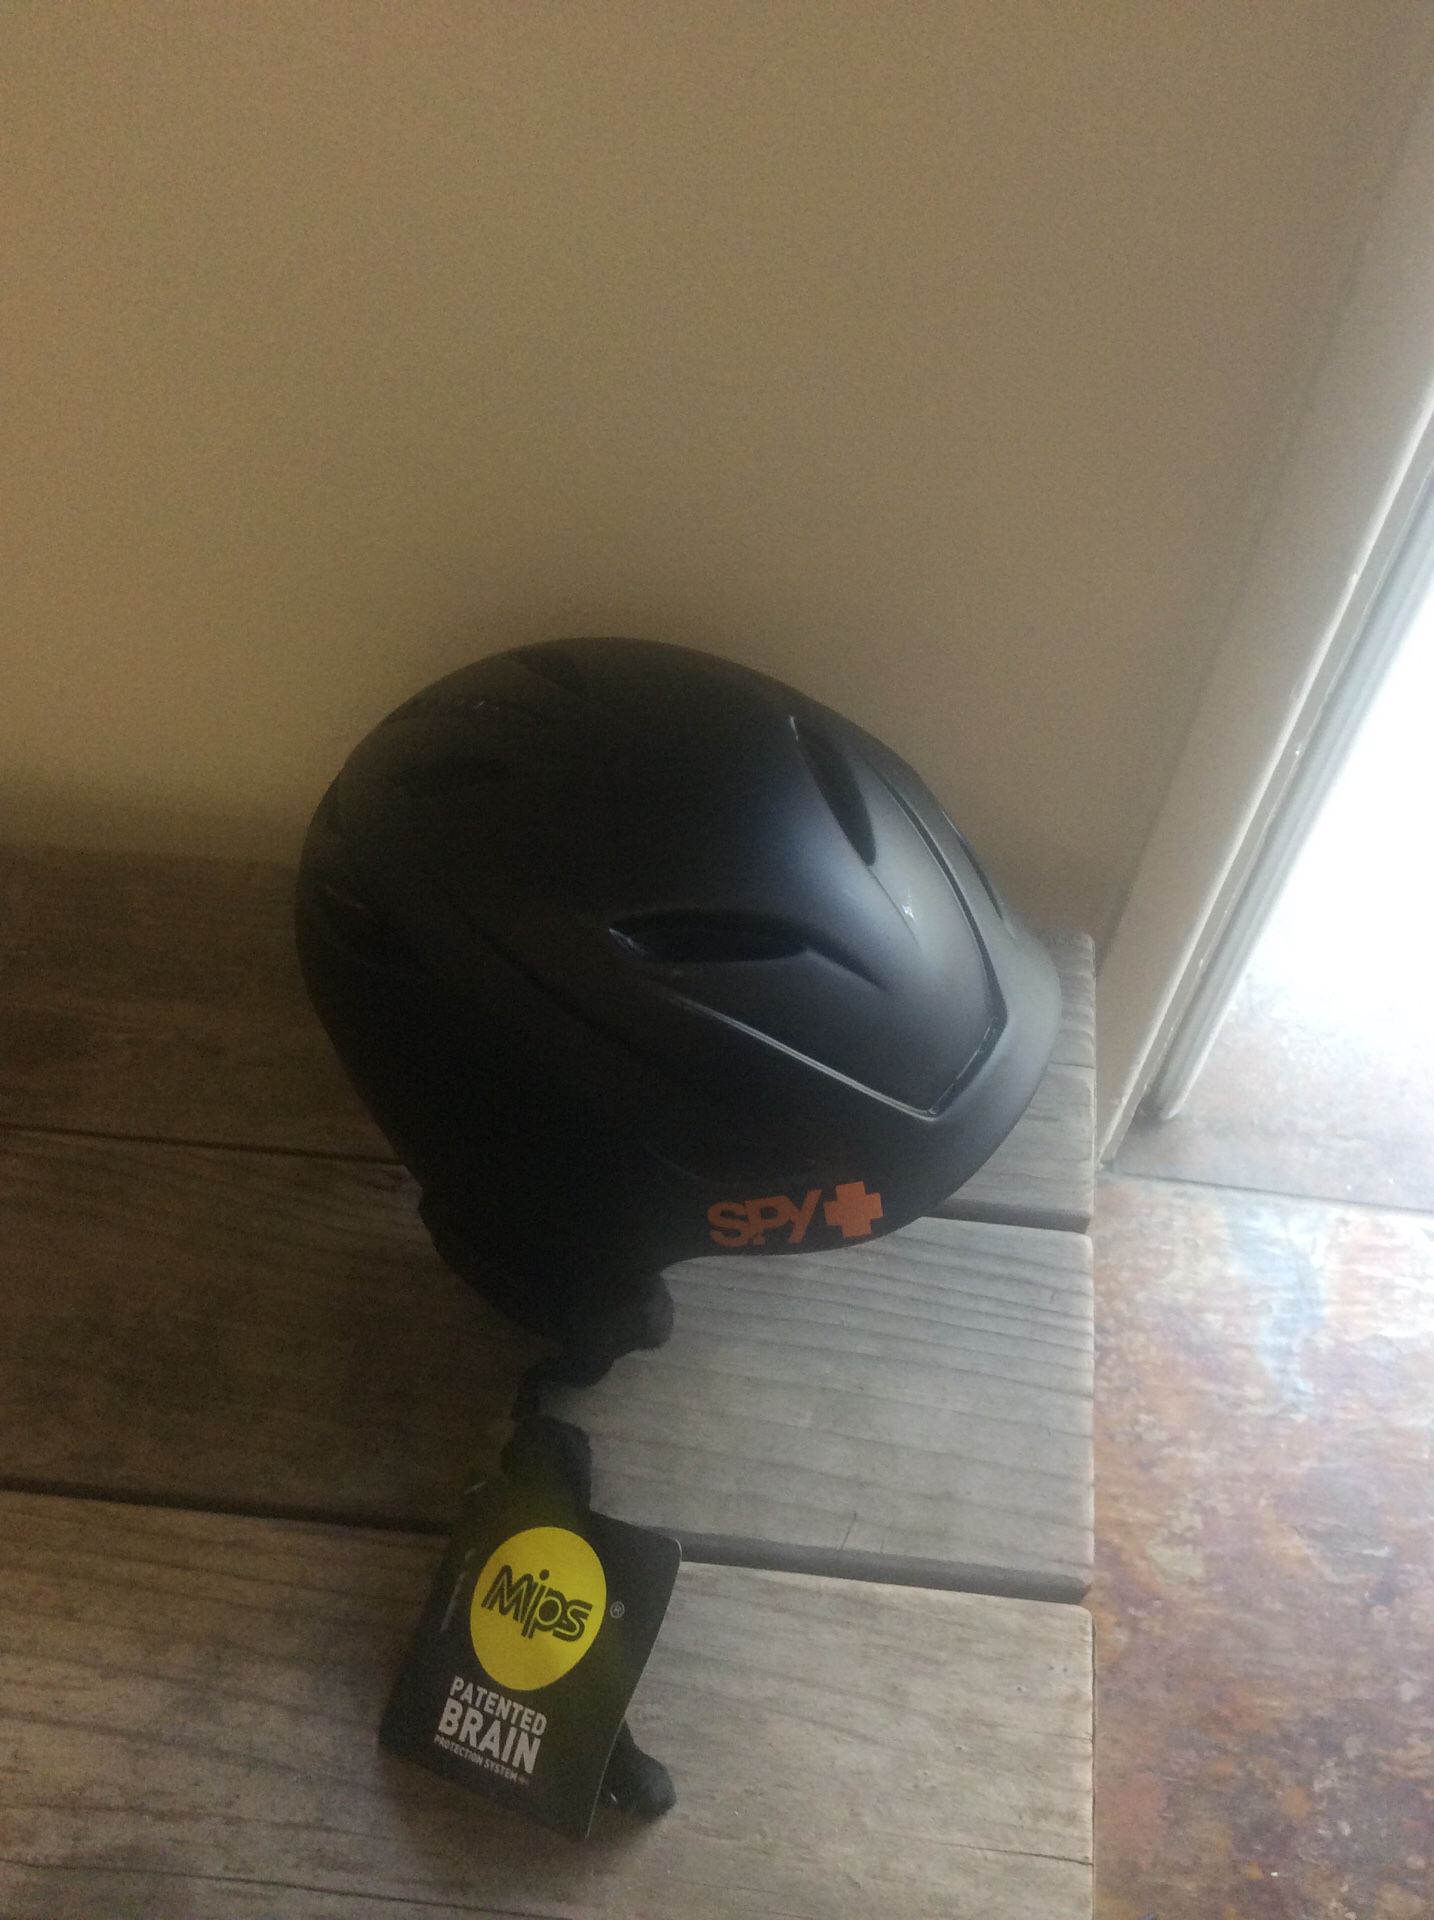 SPY + helmet